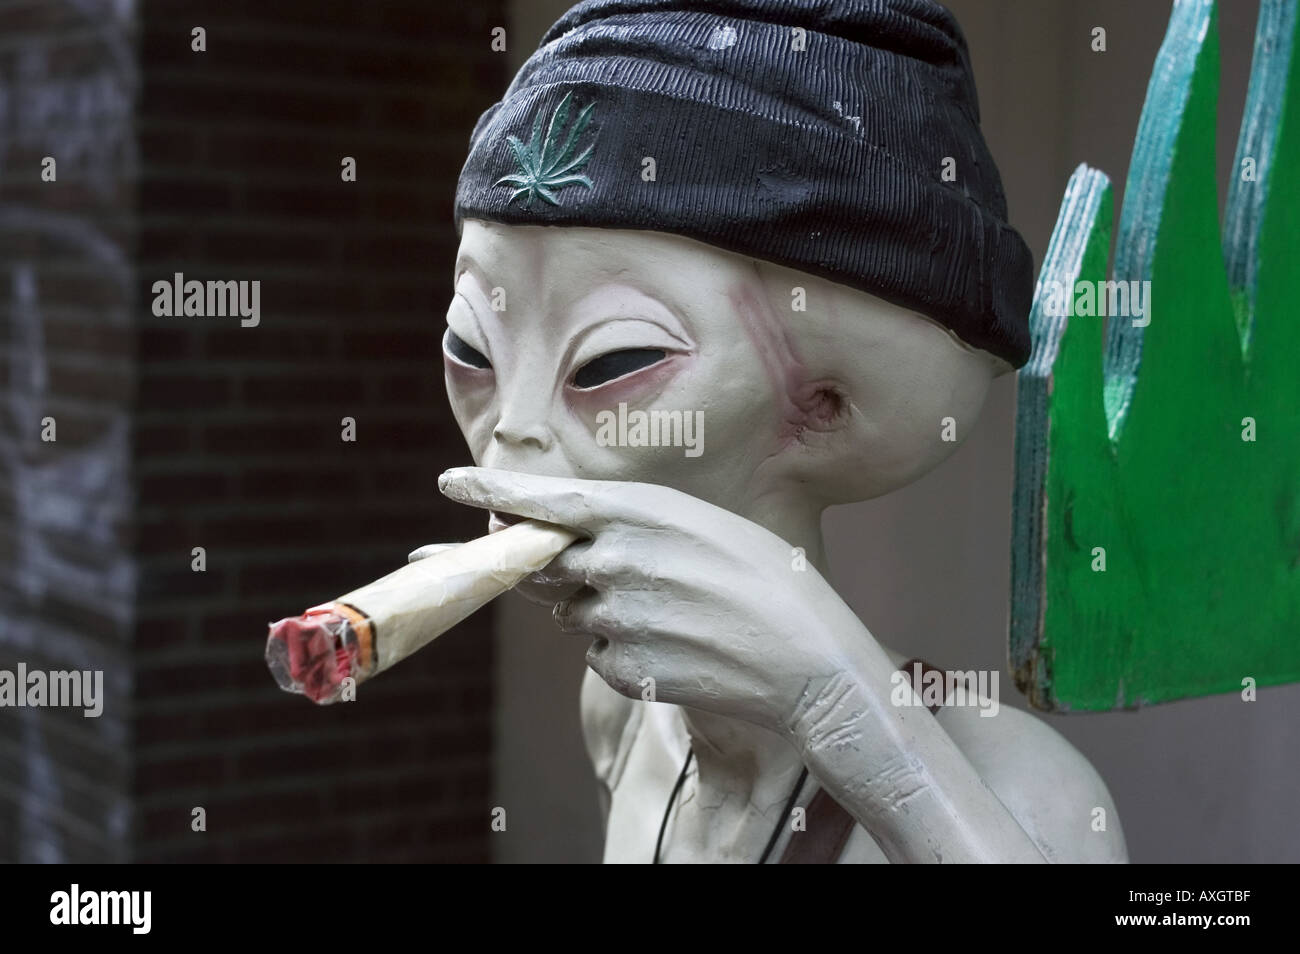 alien figure smoking cannabis joint Stock Photo